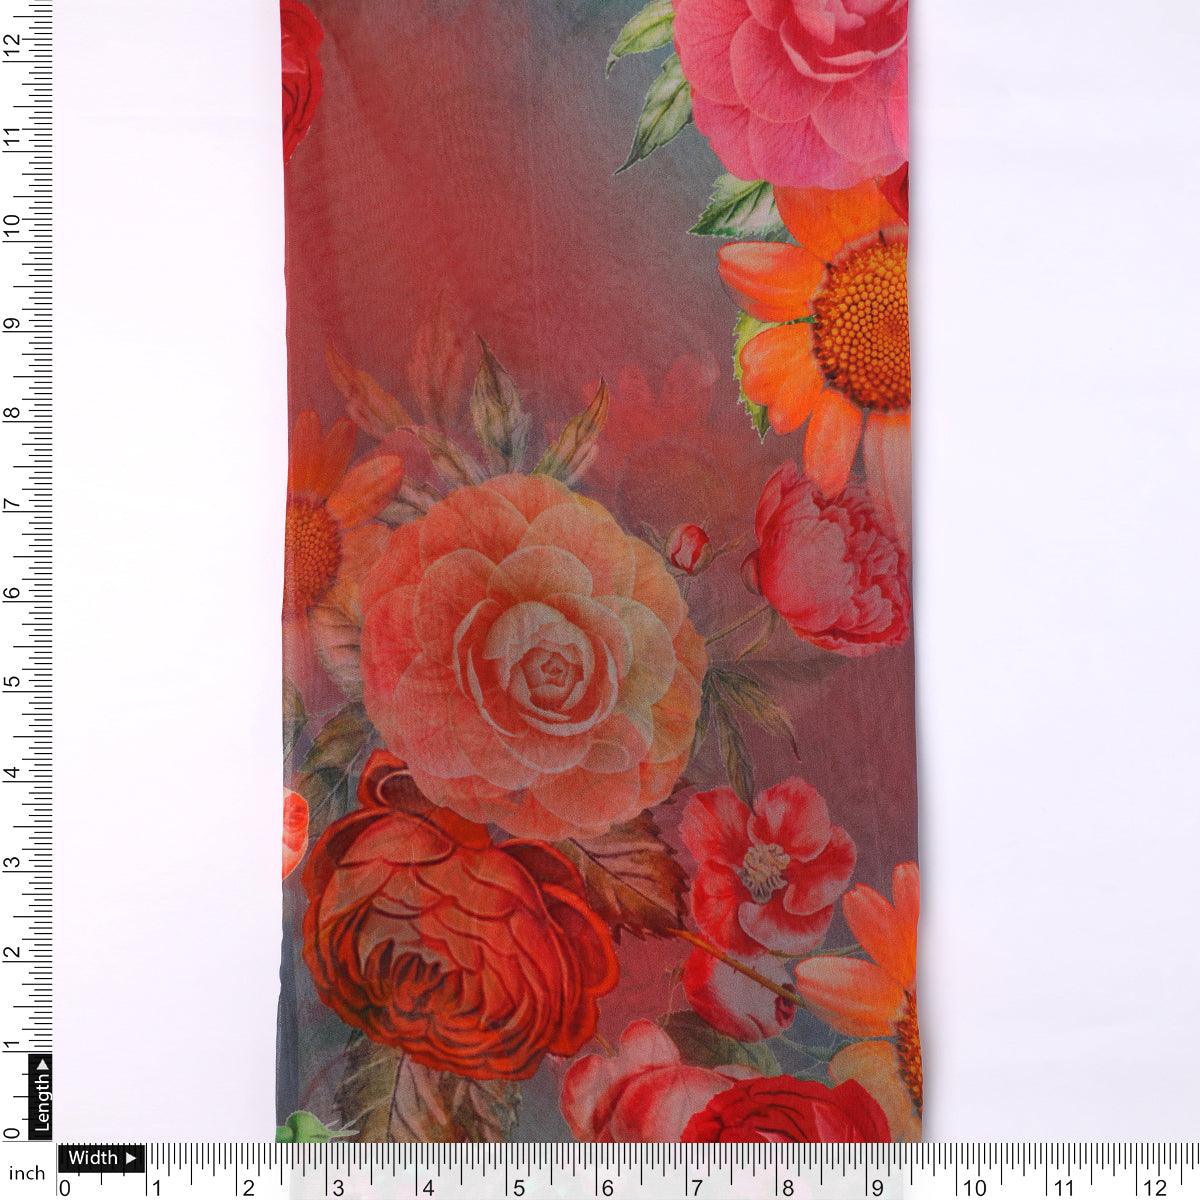 Huge Realistic Flowers Digital Printed Fabric - Pure Georgette - FAB VOGUE Studio®